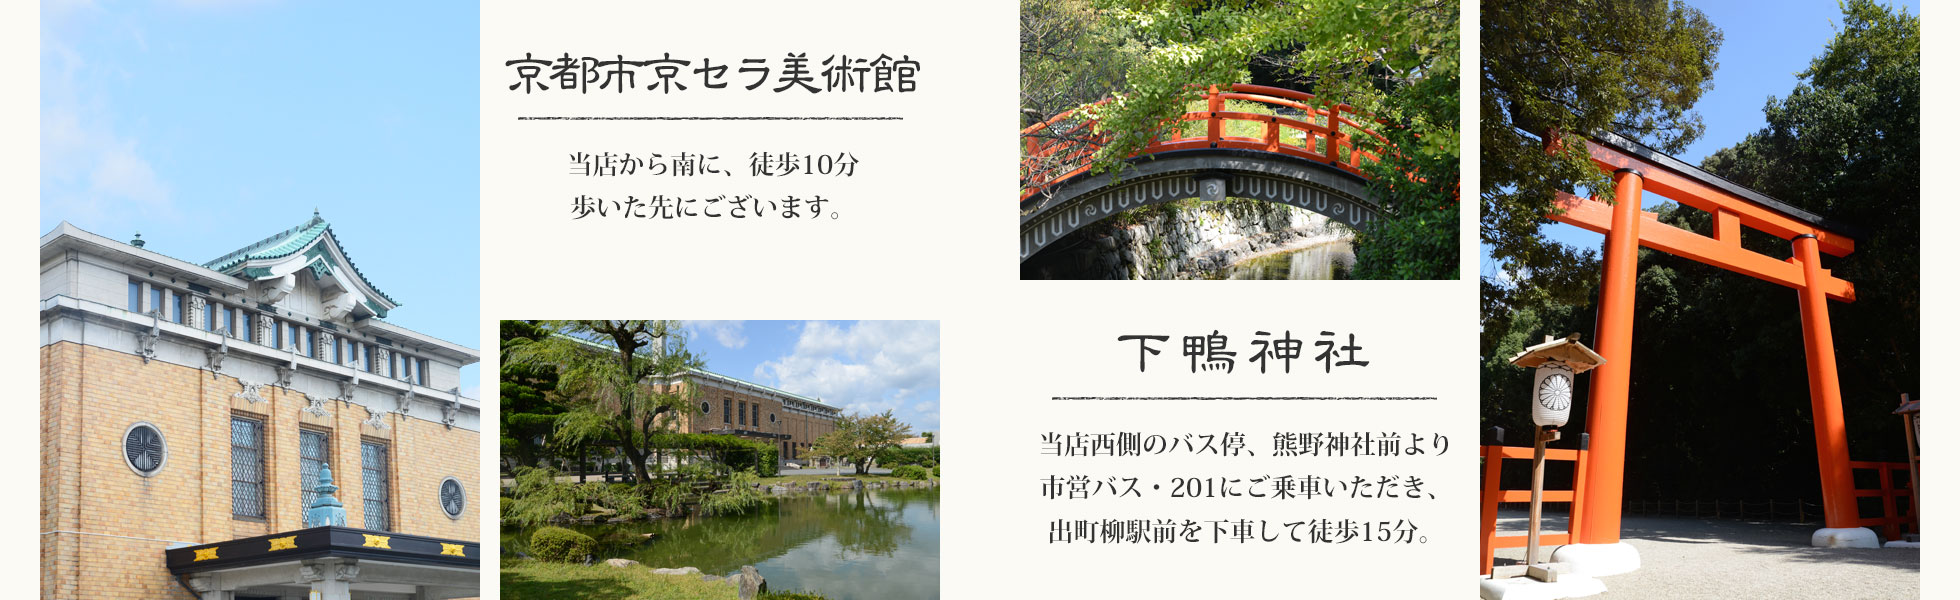 京都市美術館・下鴨神社